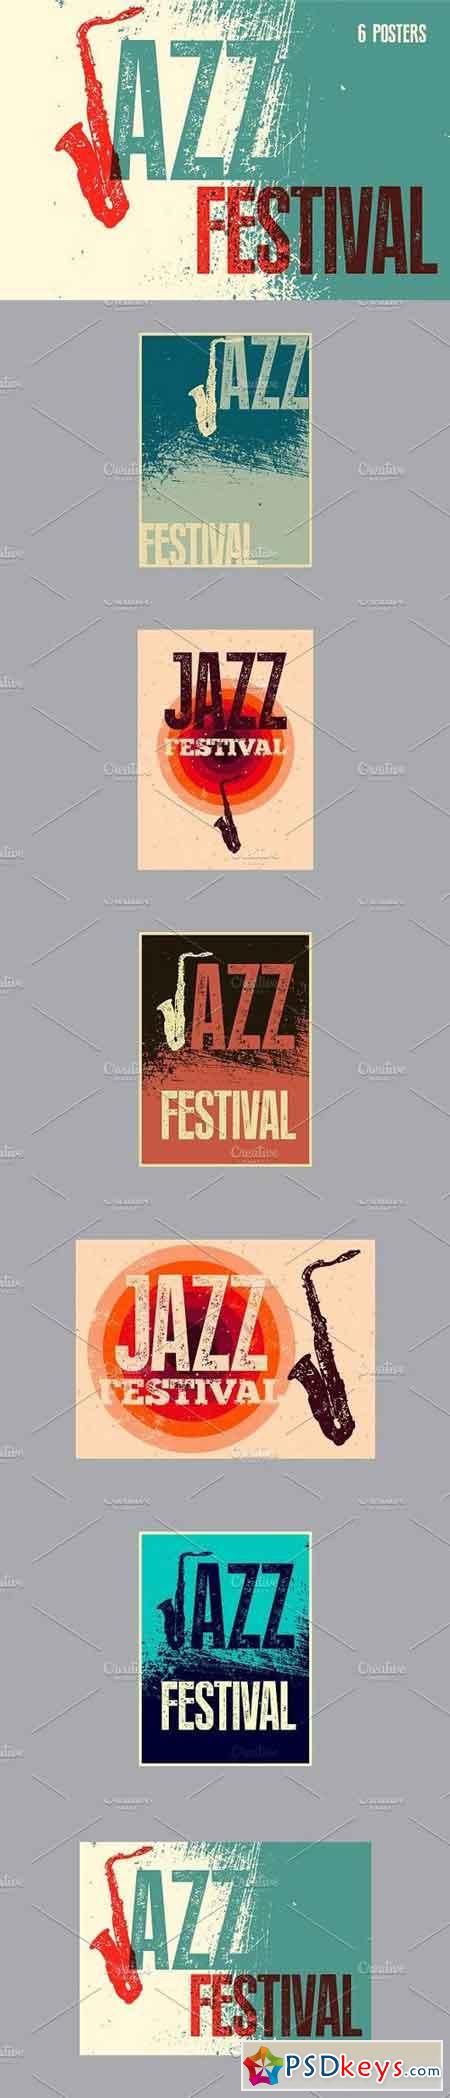 Jazz Festival typographic poster. 1279175